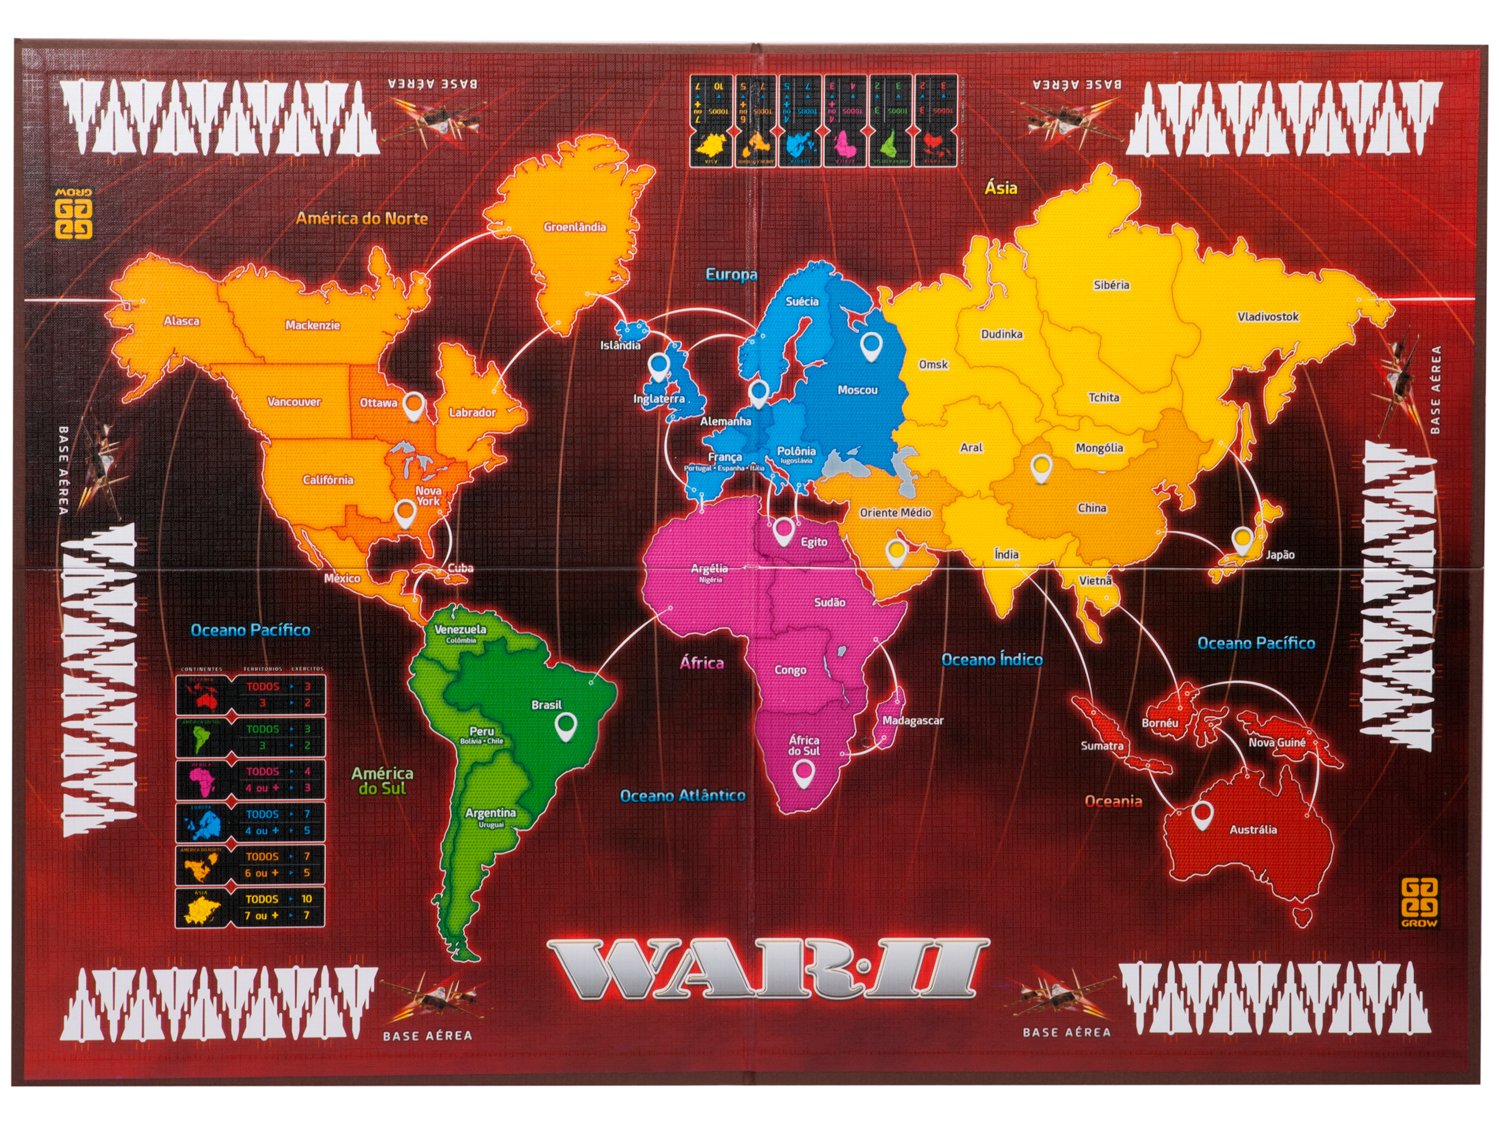 War e War 2 - estratégia tabuleiro